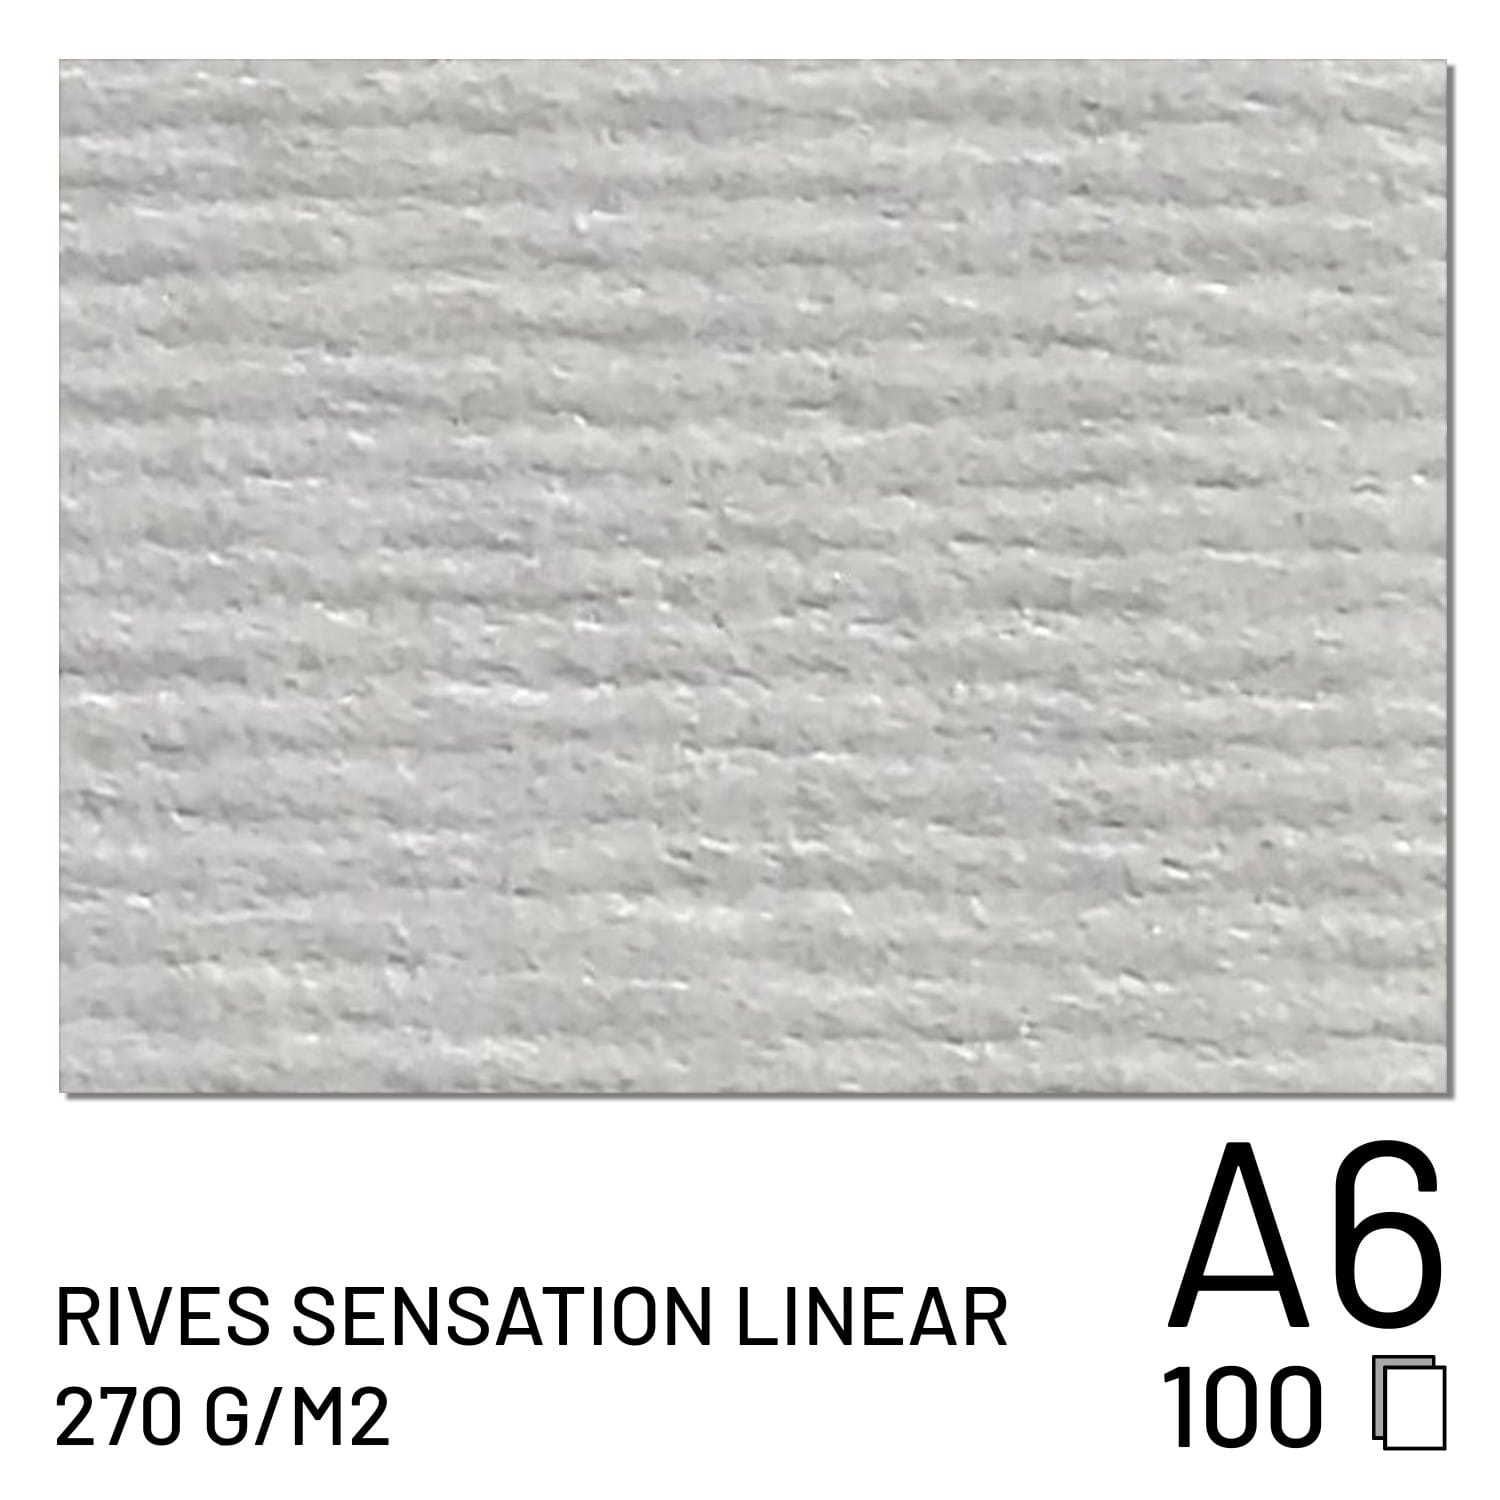 Papier FUJI Rives Sensation Linear 270g A6 (100 feuilles) (70100148093)